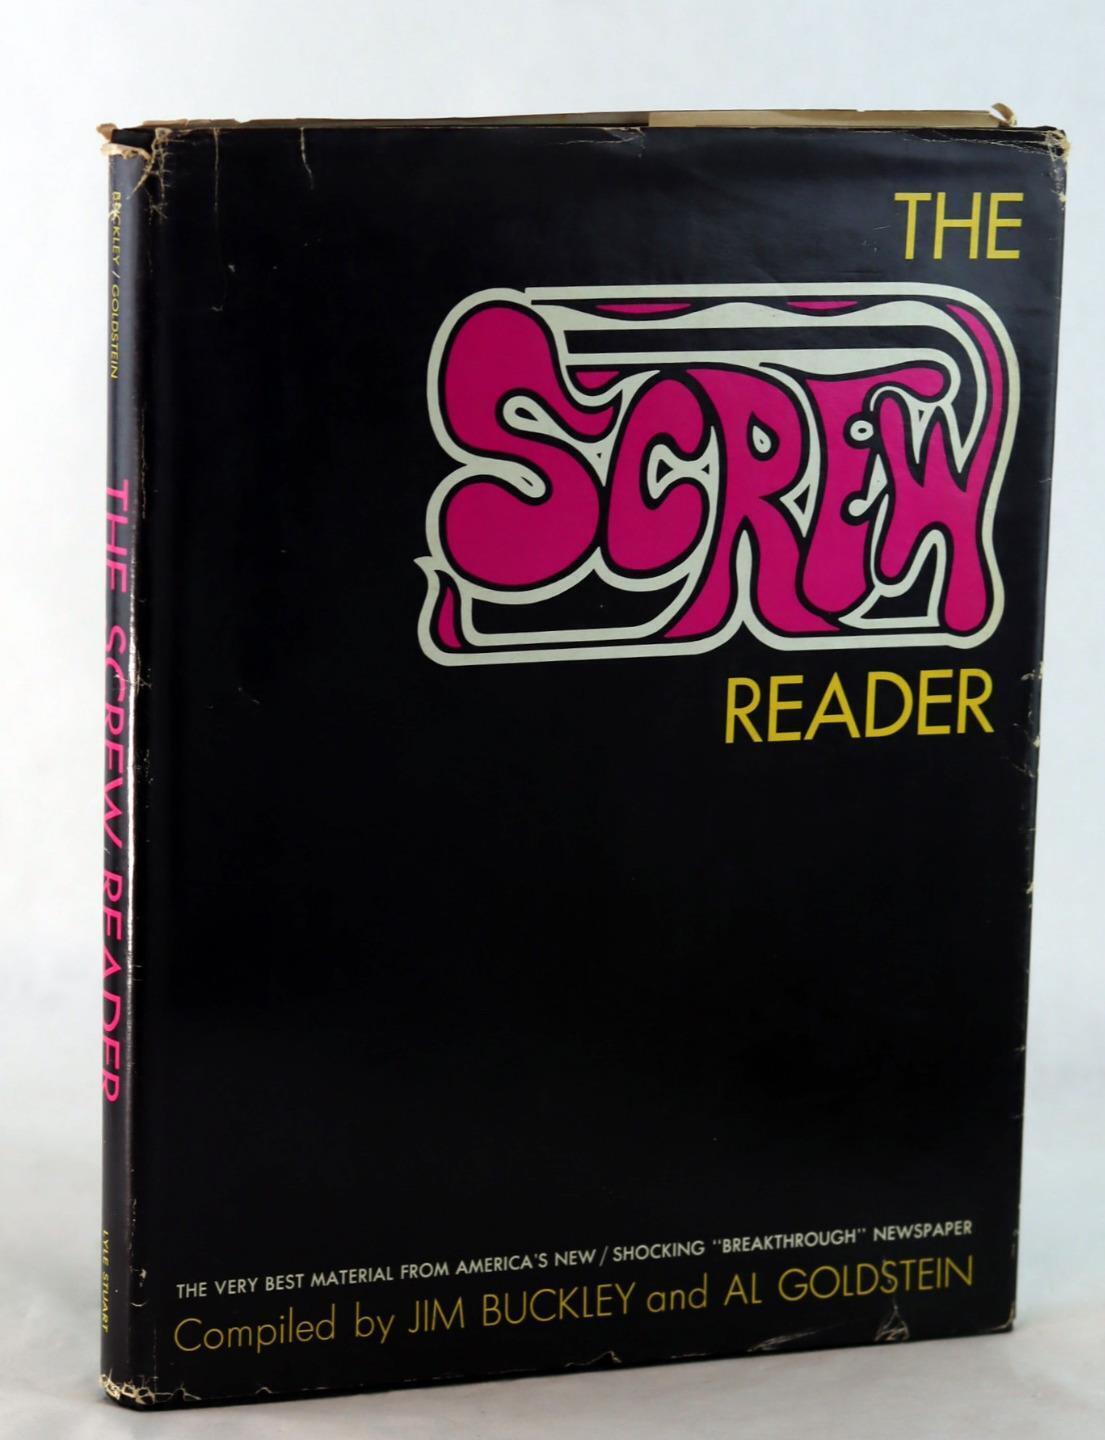 Al Goldstein 1971 1st Ed The Screw Reader Underground Sex Newspaper HC w/DJ